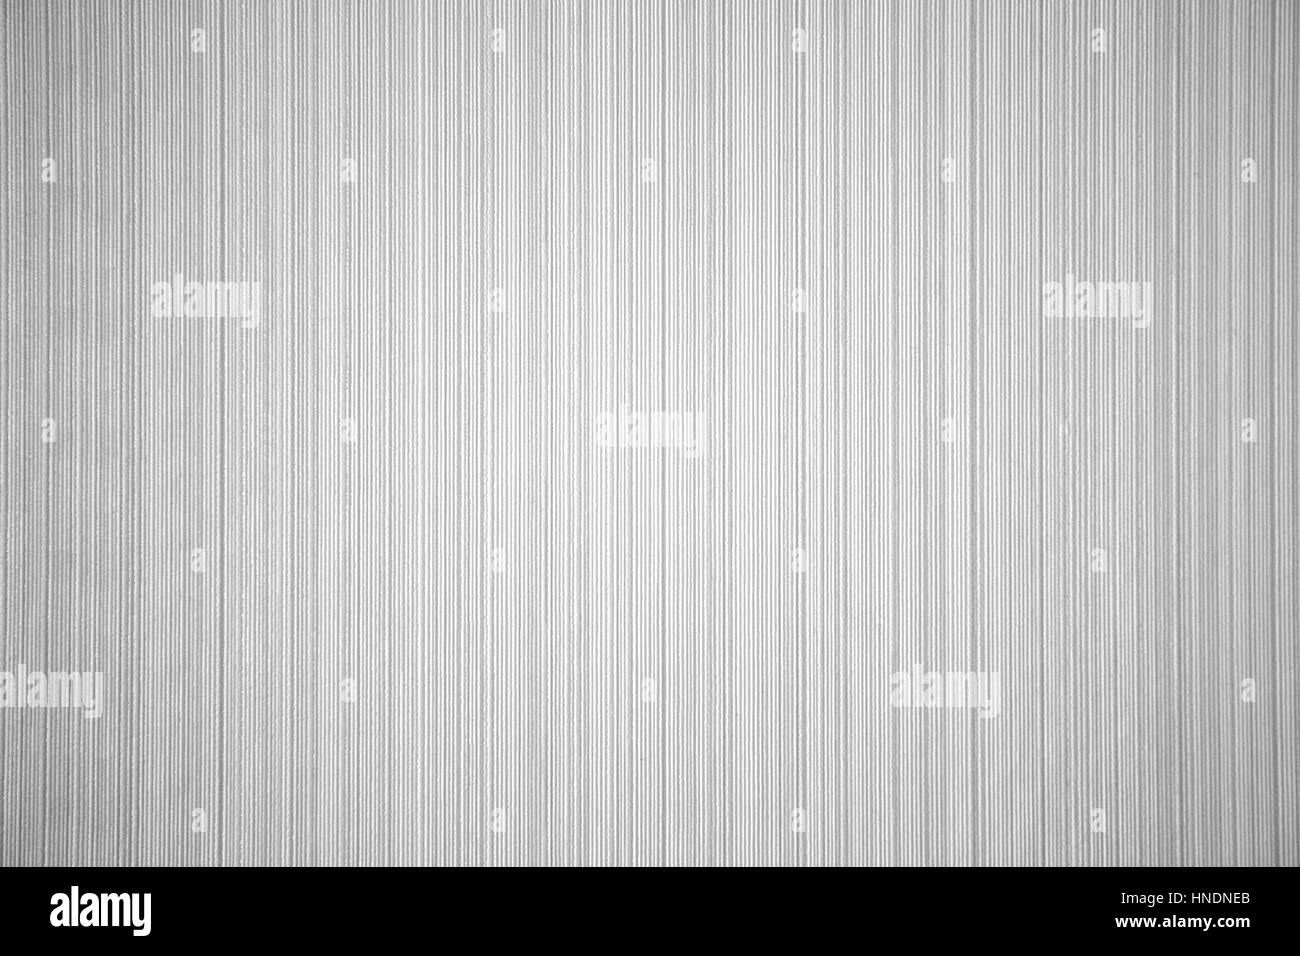 white striped wallpaper textured Stock Photo